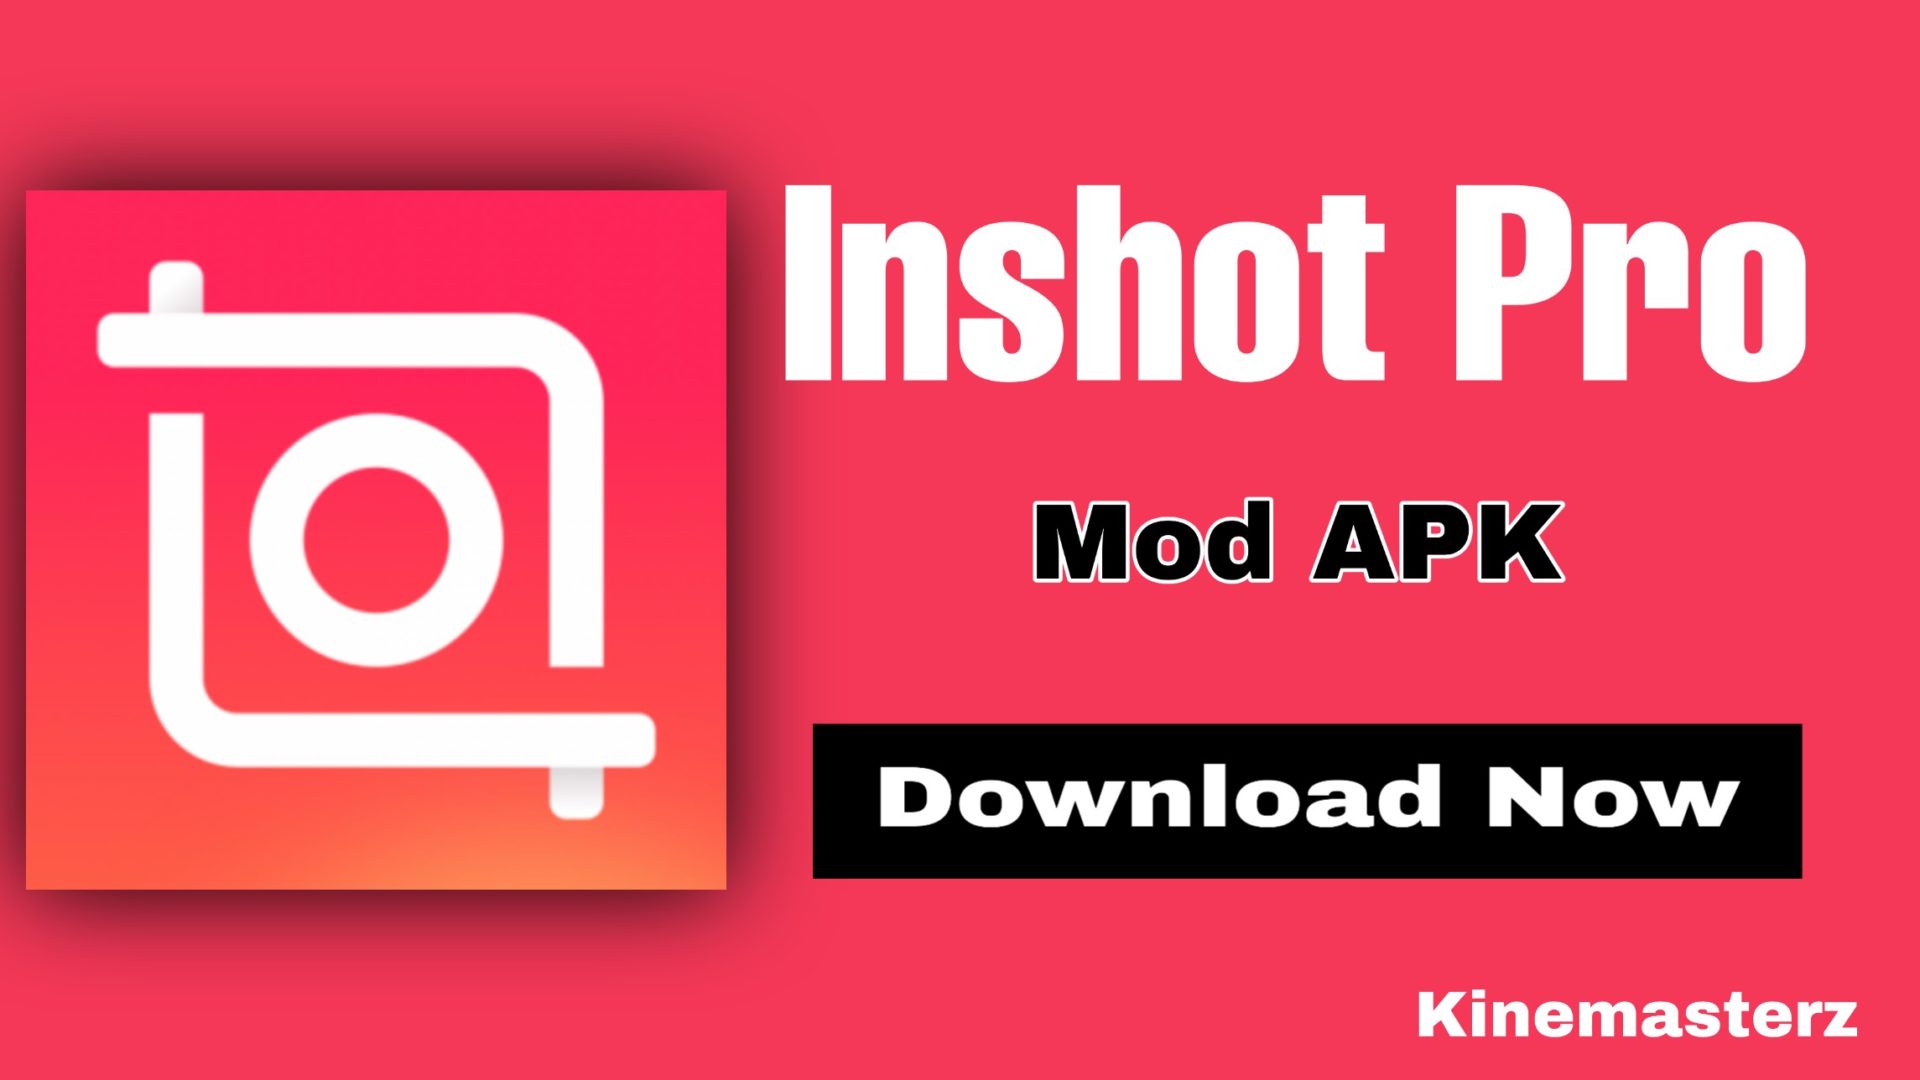 picsart mod apk free download